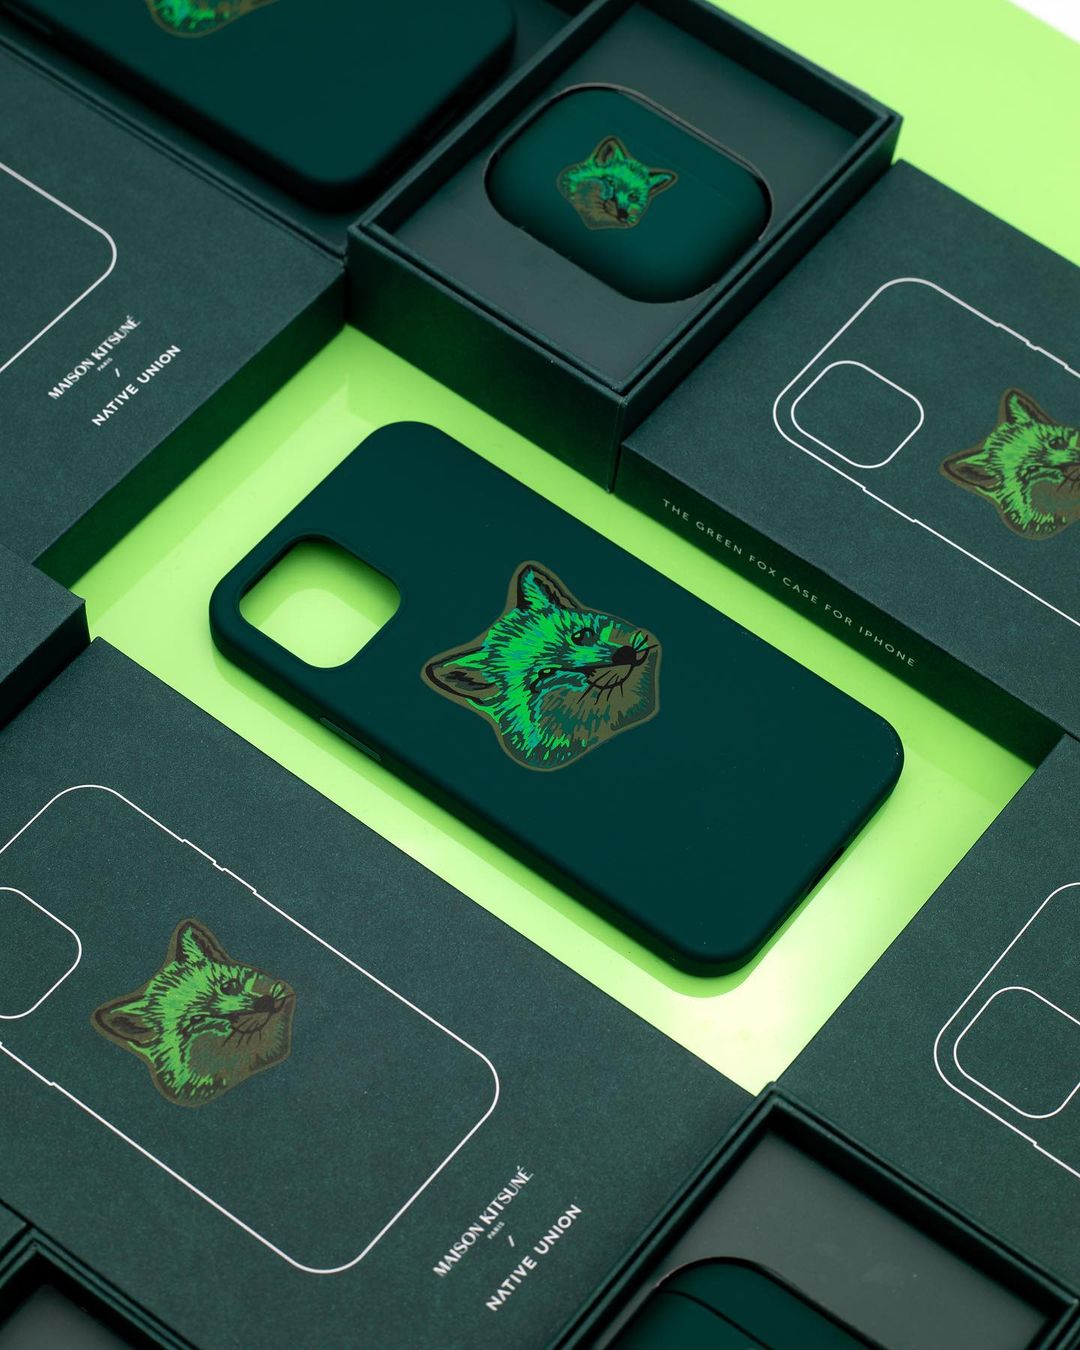 Maison Kitsuné выпустил коллекцию аксессуаров для iPhone в изумрудно-зеленой гамме (фото 1)